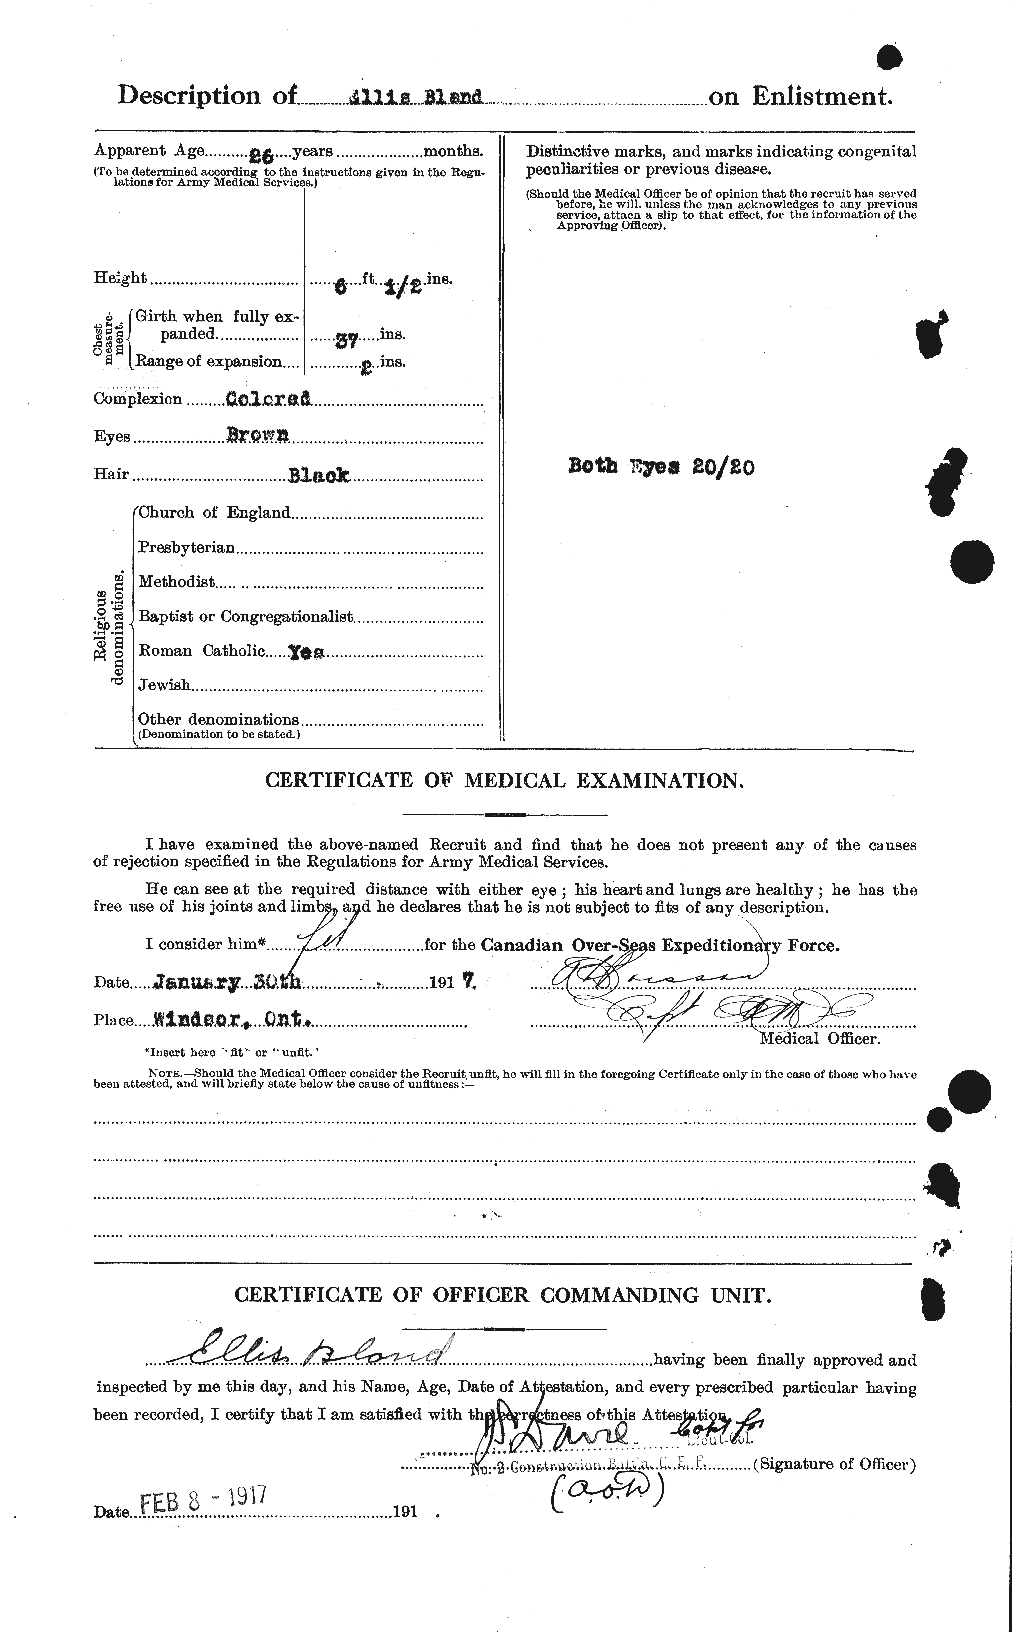 Dossiers du Personnel de la Première Guerre mondiale - CEC 240622b